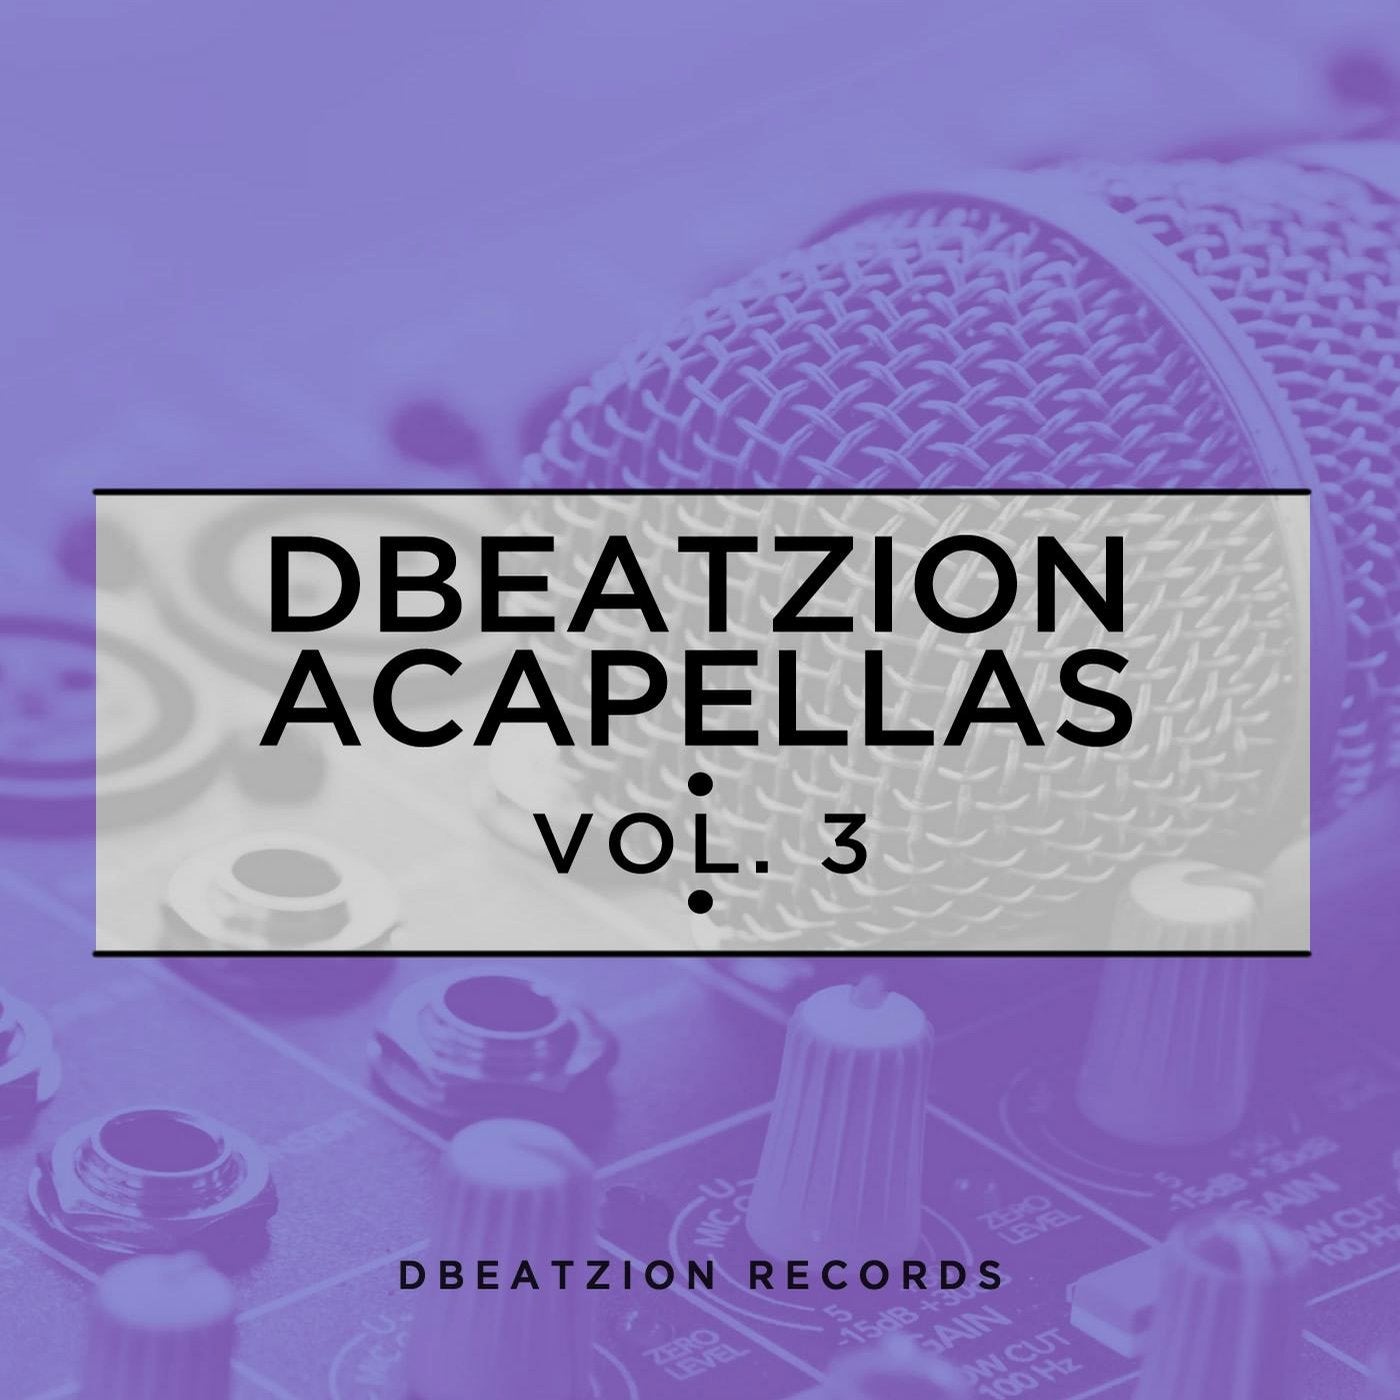 Dbeatzion Acapellas Vol. 3